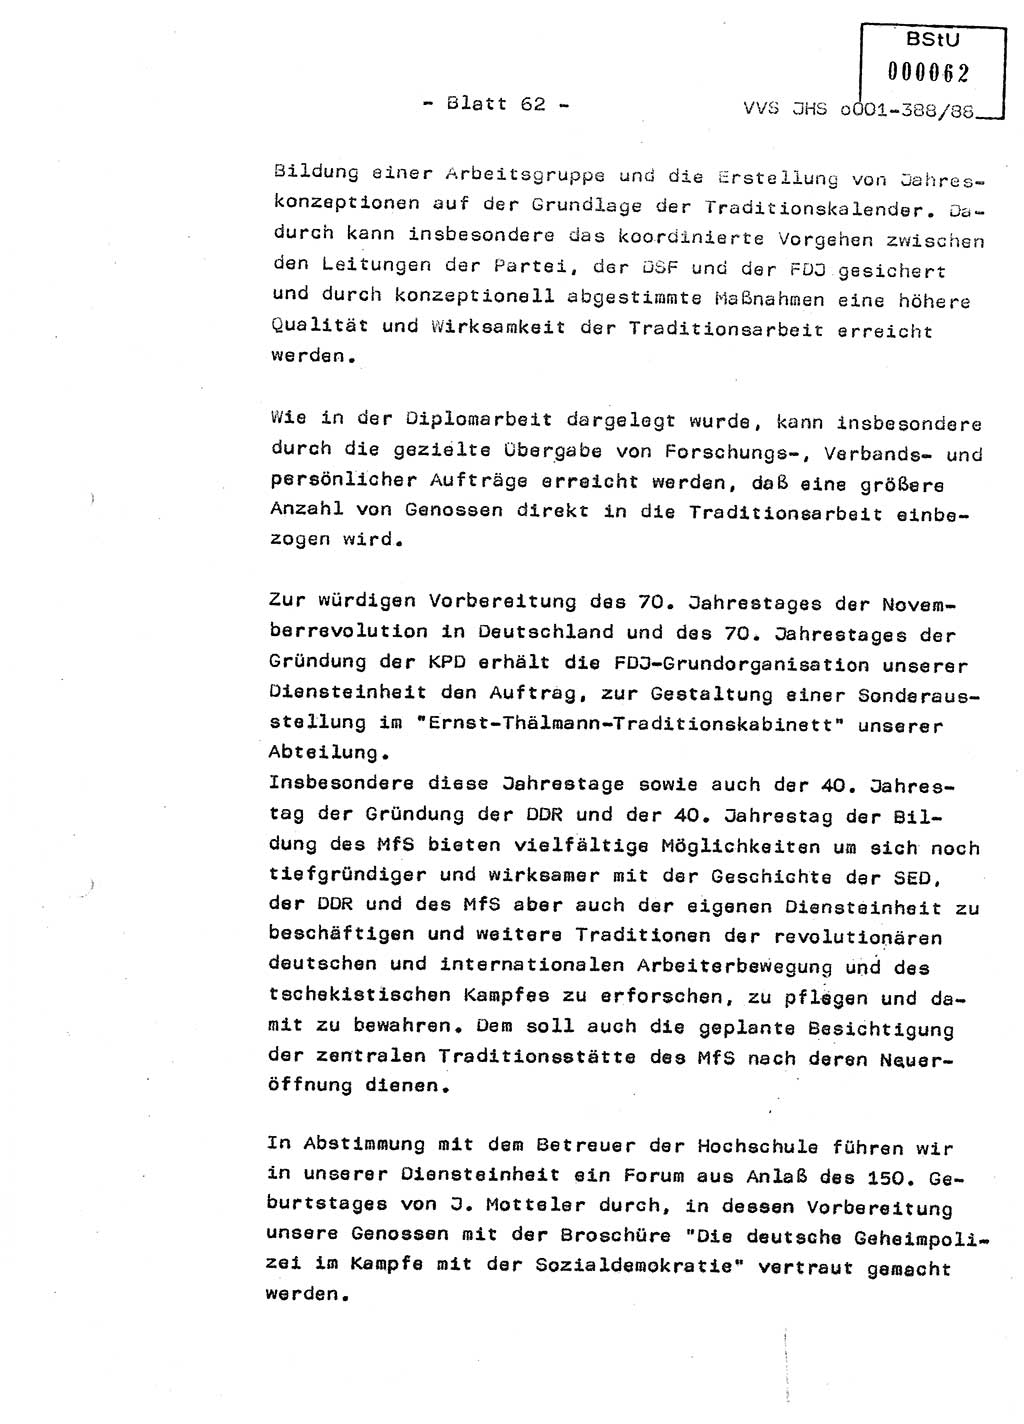 Diplomarbeit Hauptmann Heinz Brixel (Abt. ⅩⅣ), Ministerium für Staatssicherheit (MfS) [Deutsche Demokratische Republik (DDR)], Juristische Hochschule (JHS), Vertrauliche Verschlußsache (VVS) o001-388/88, Potsdam 1988, Blatt 62 (Dipl.-Arb. MfS DDR JHS VVS o001-388/88 1988, Bl. 62)